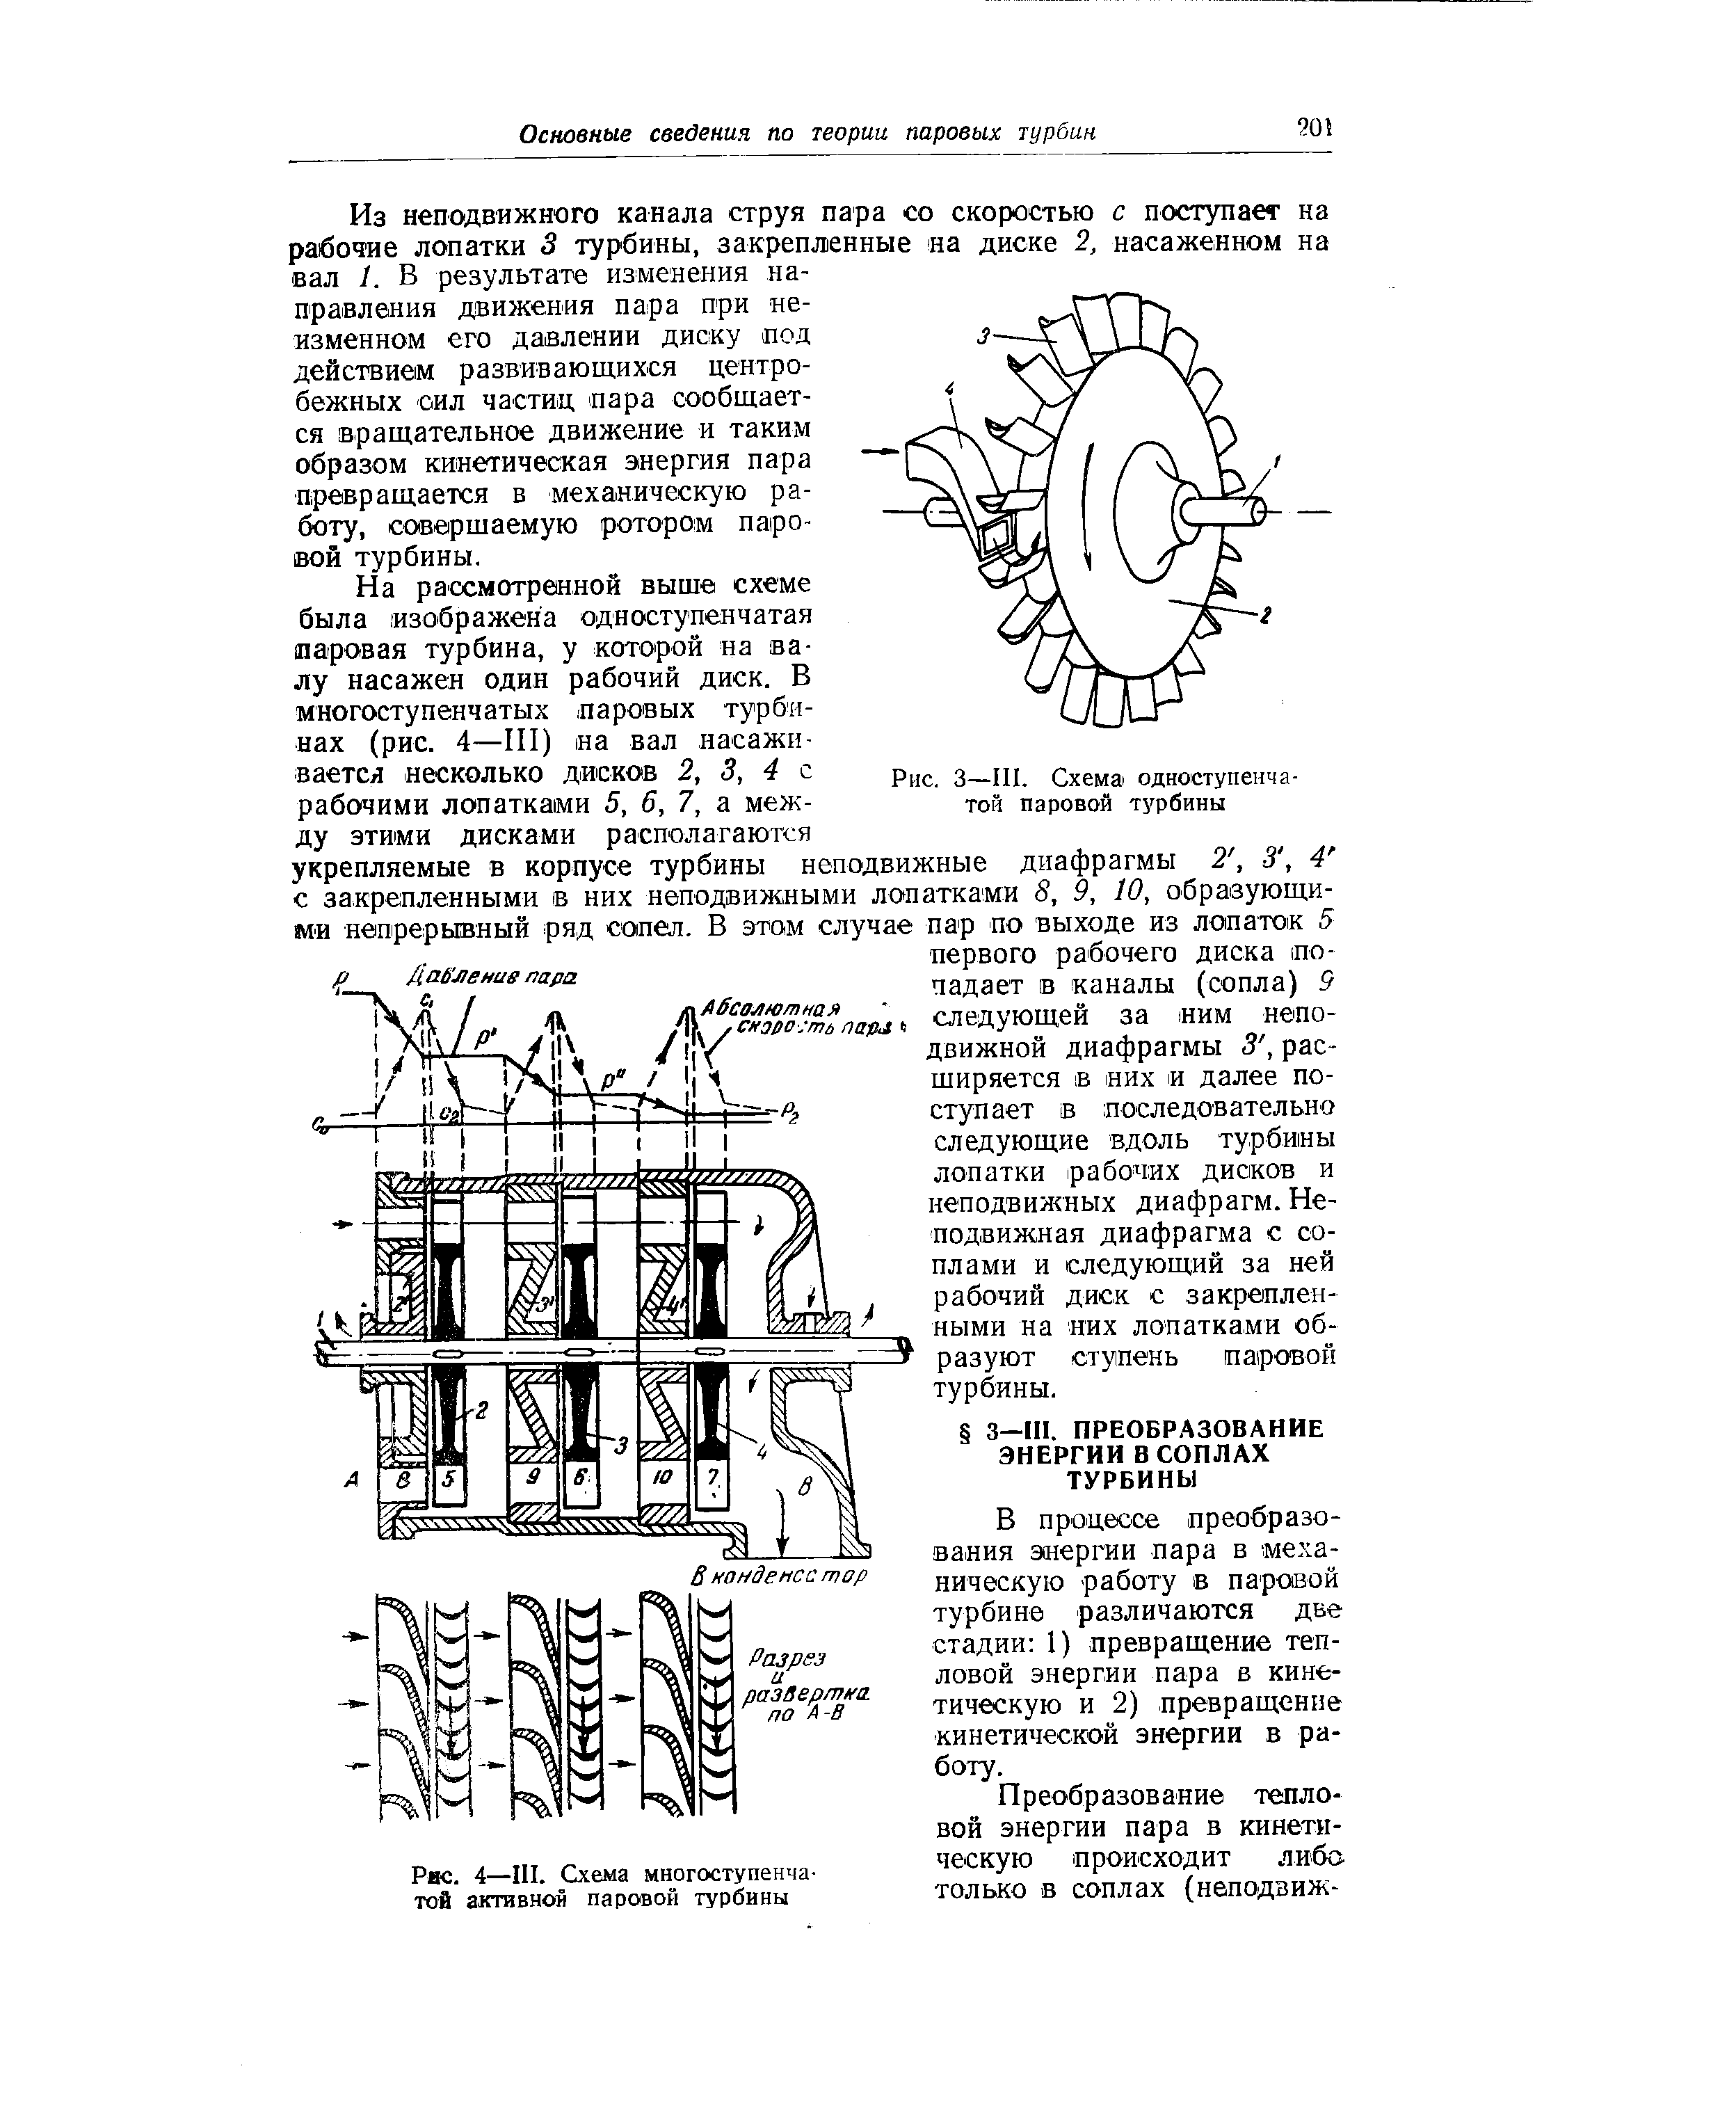 Рис. 4—III. Схема многоступенчатой активной паровой турбины
